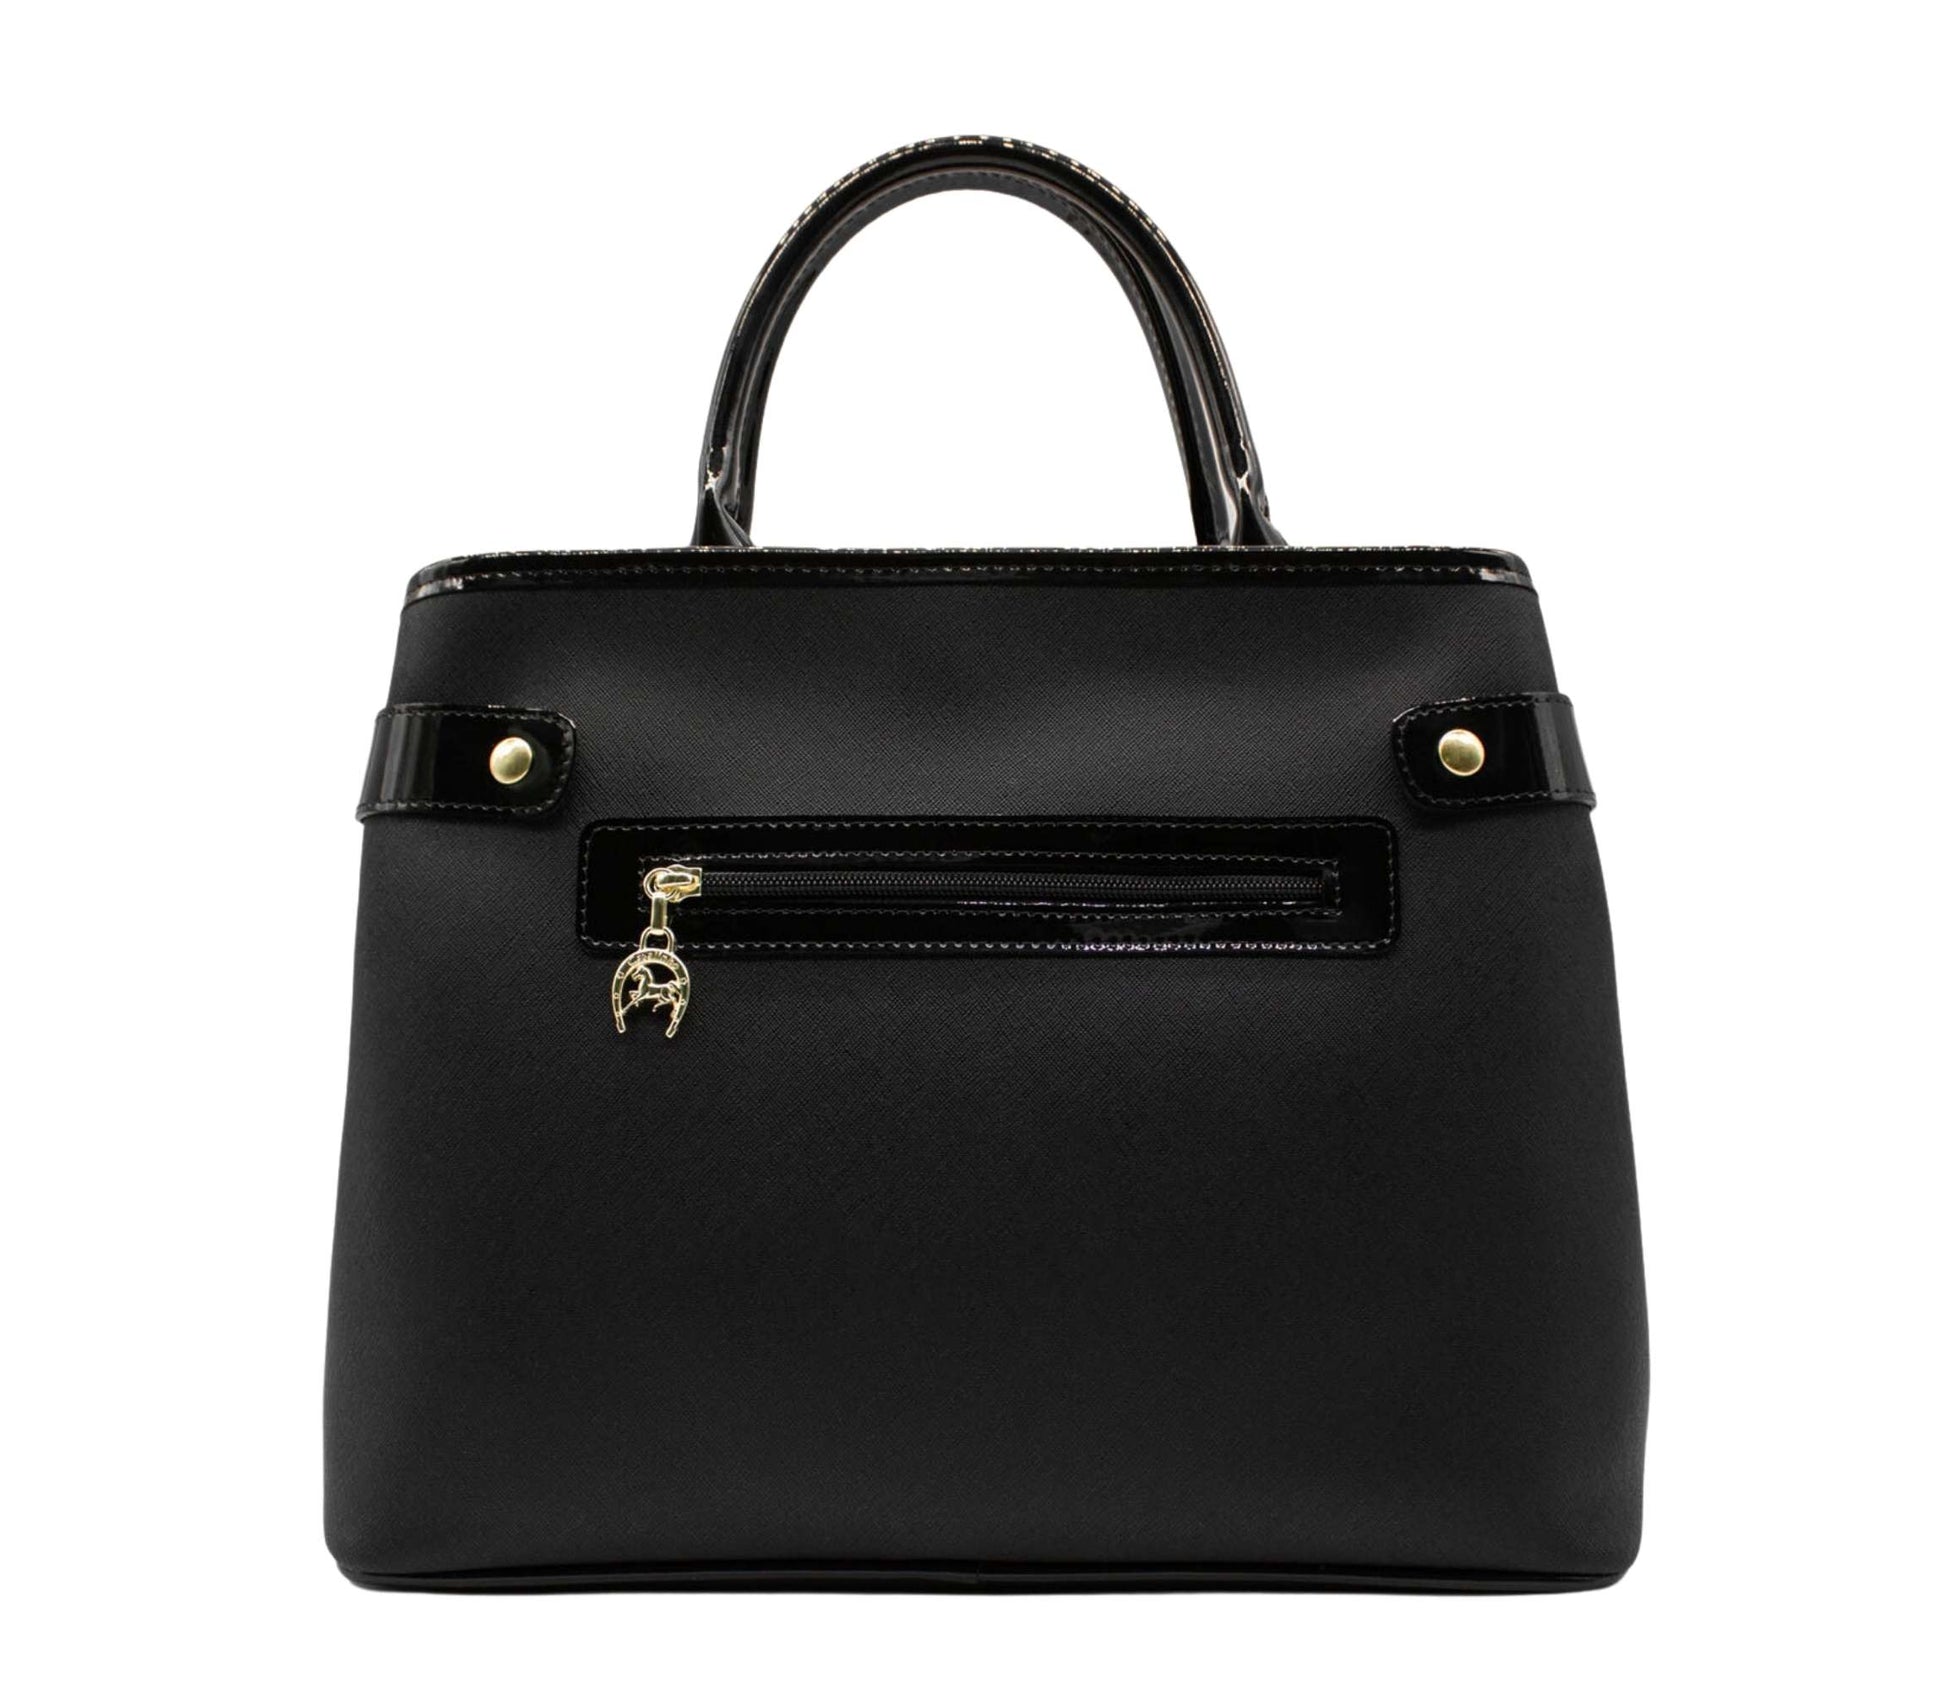 Cavalinho Royal Handbag - Black and White - 18390145.21.99_3